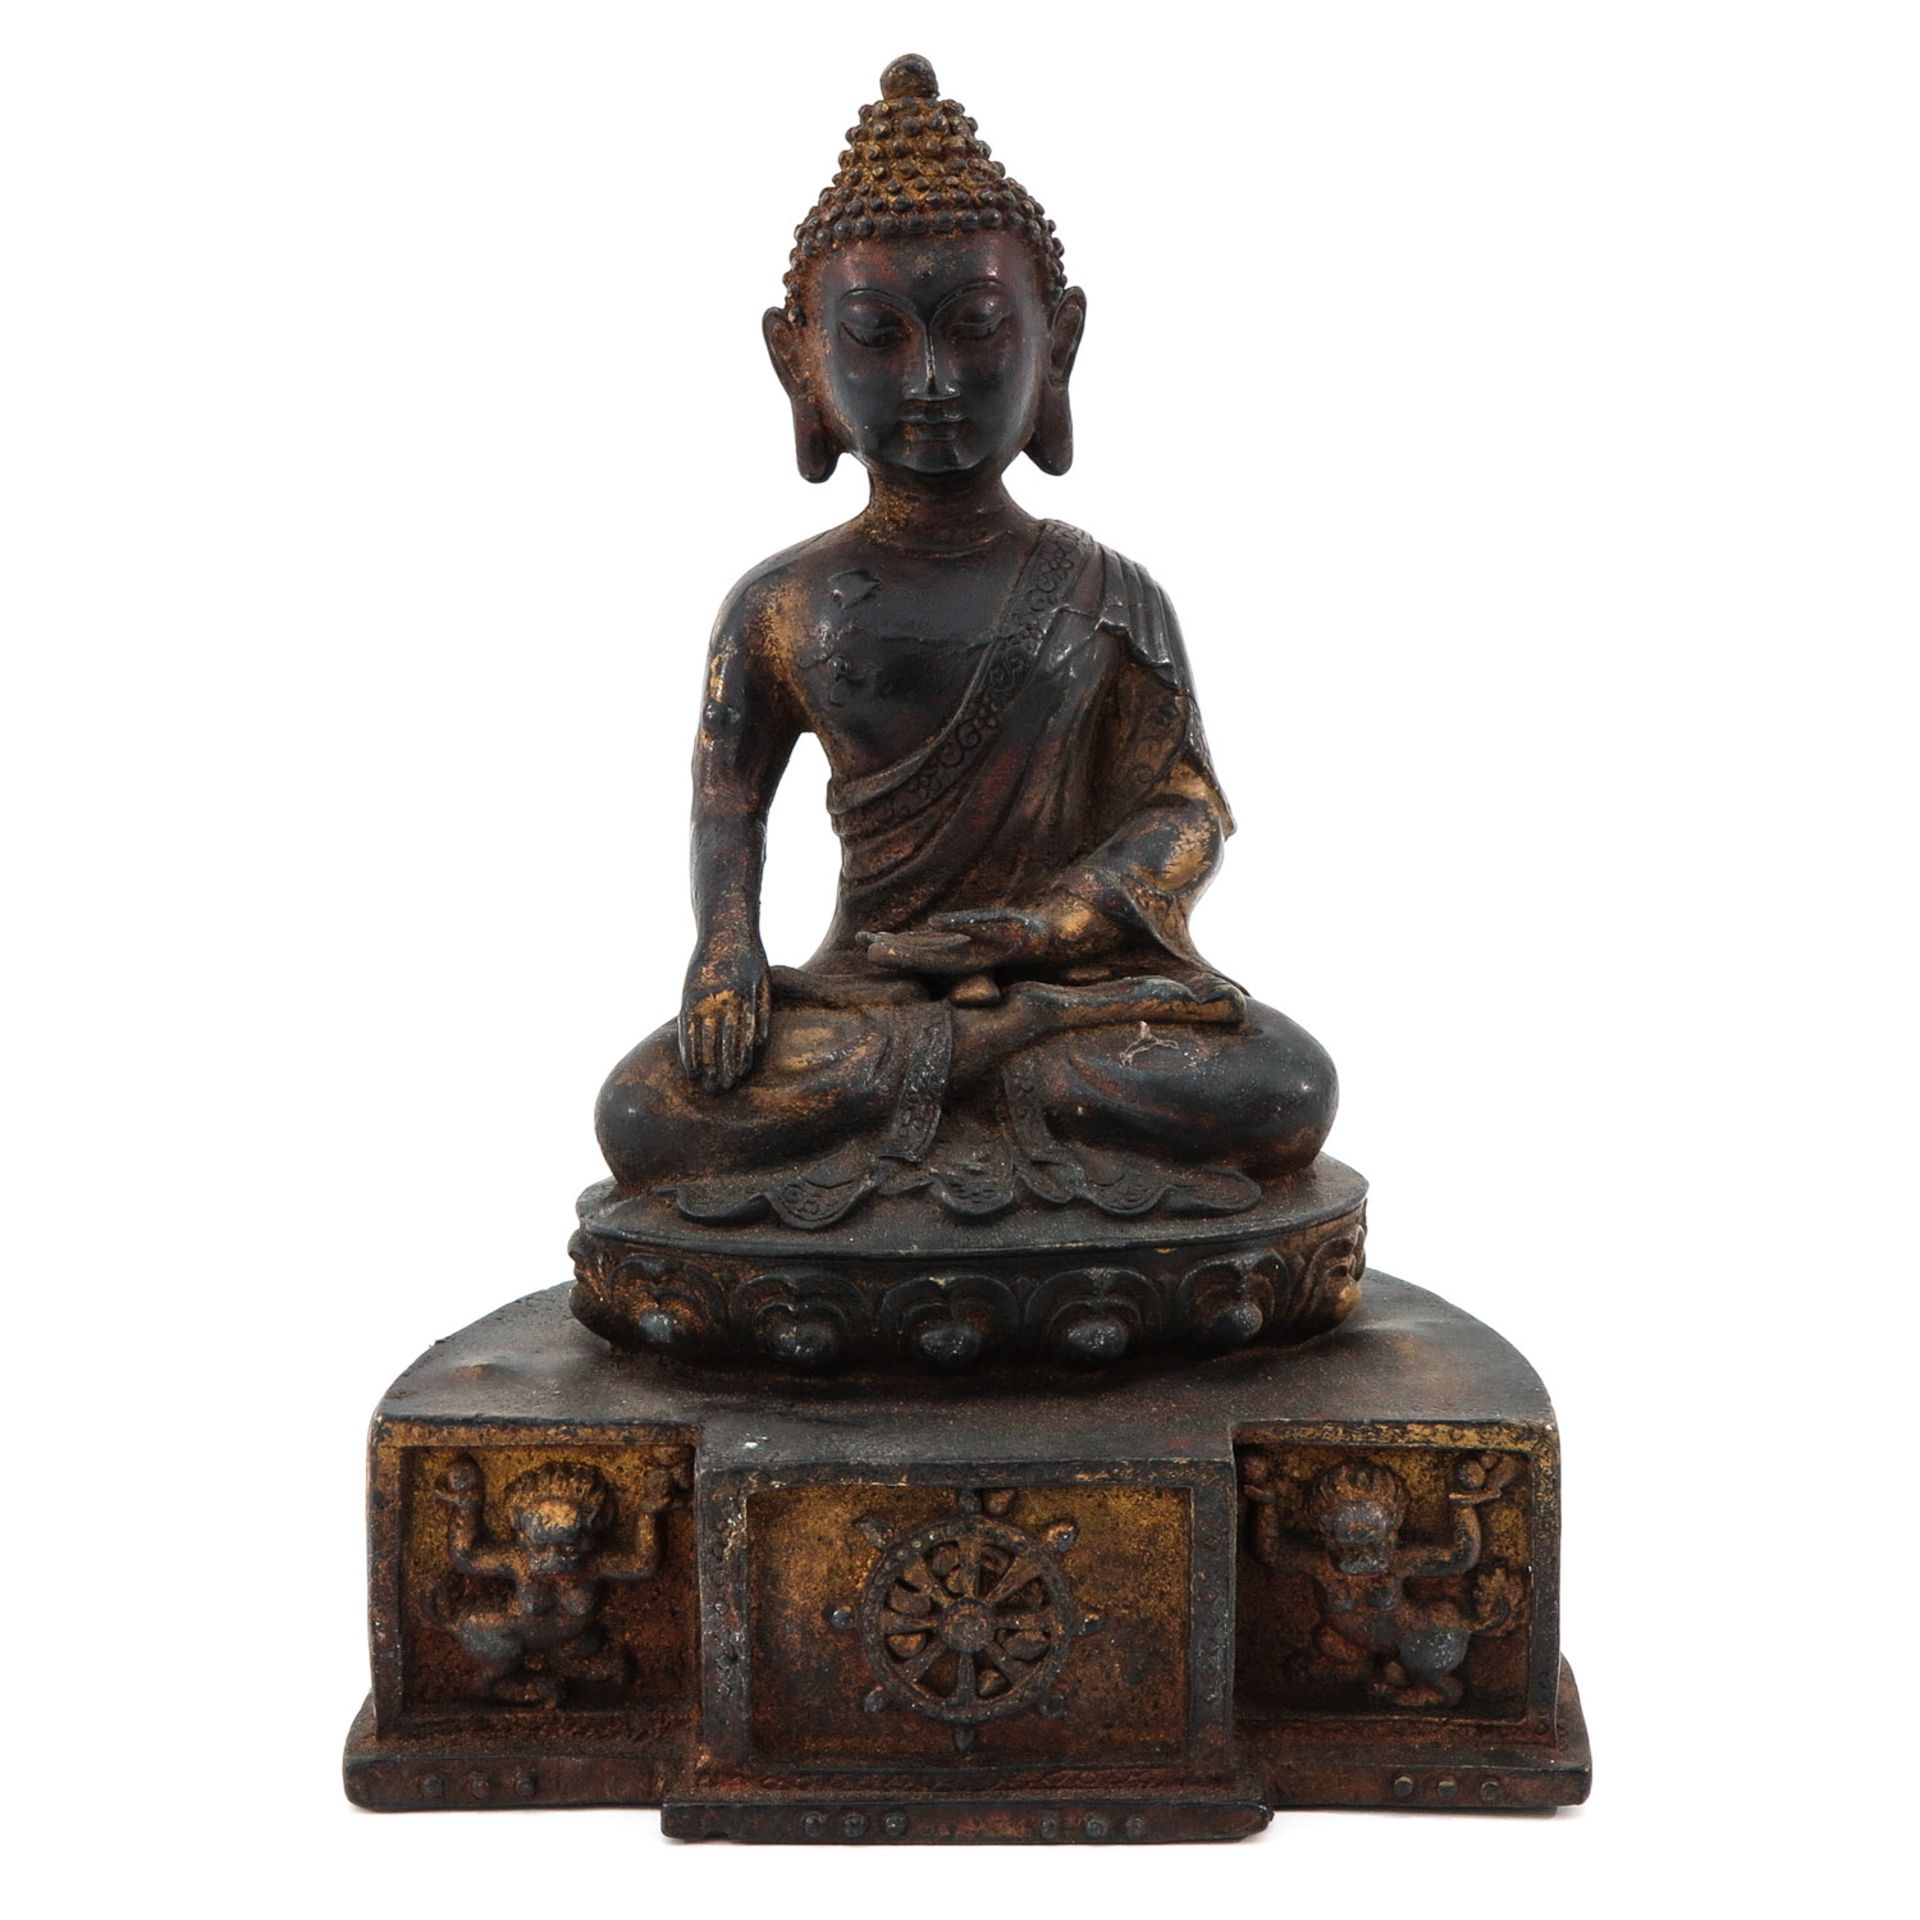 A Bronze Buddha Sculpture